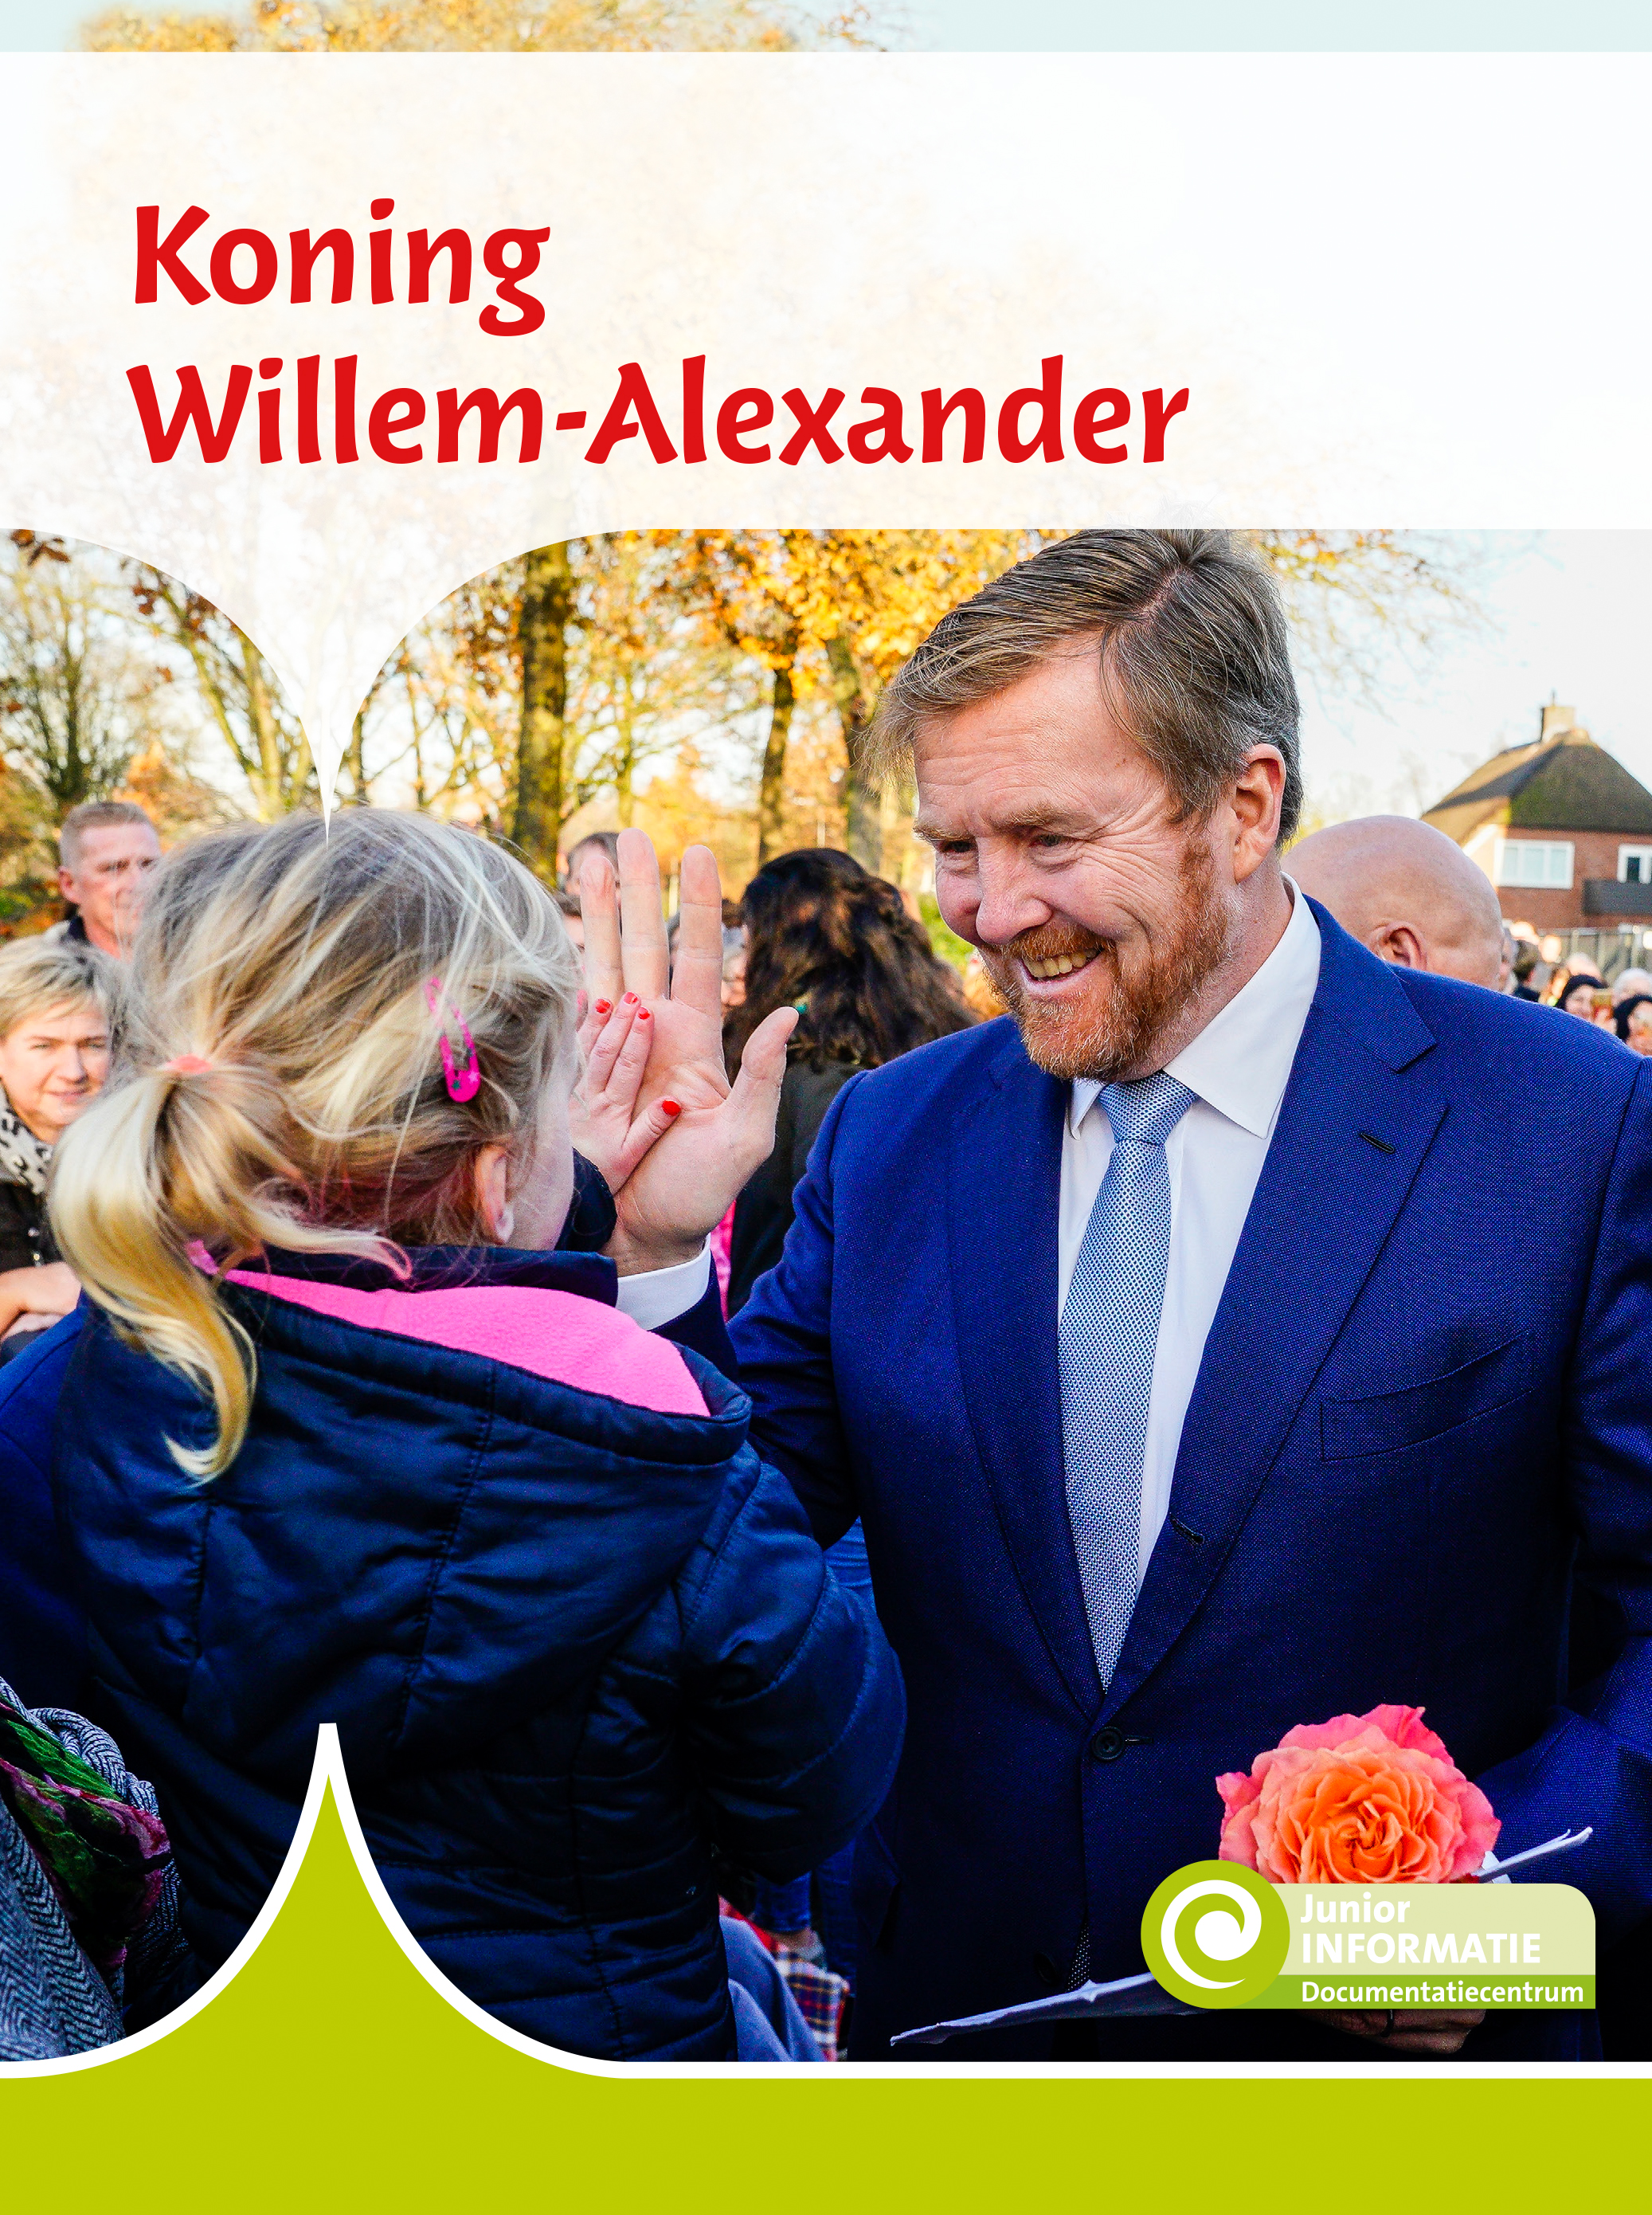 DNBJIN100 Koning Willem-Alexander